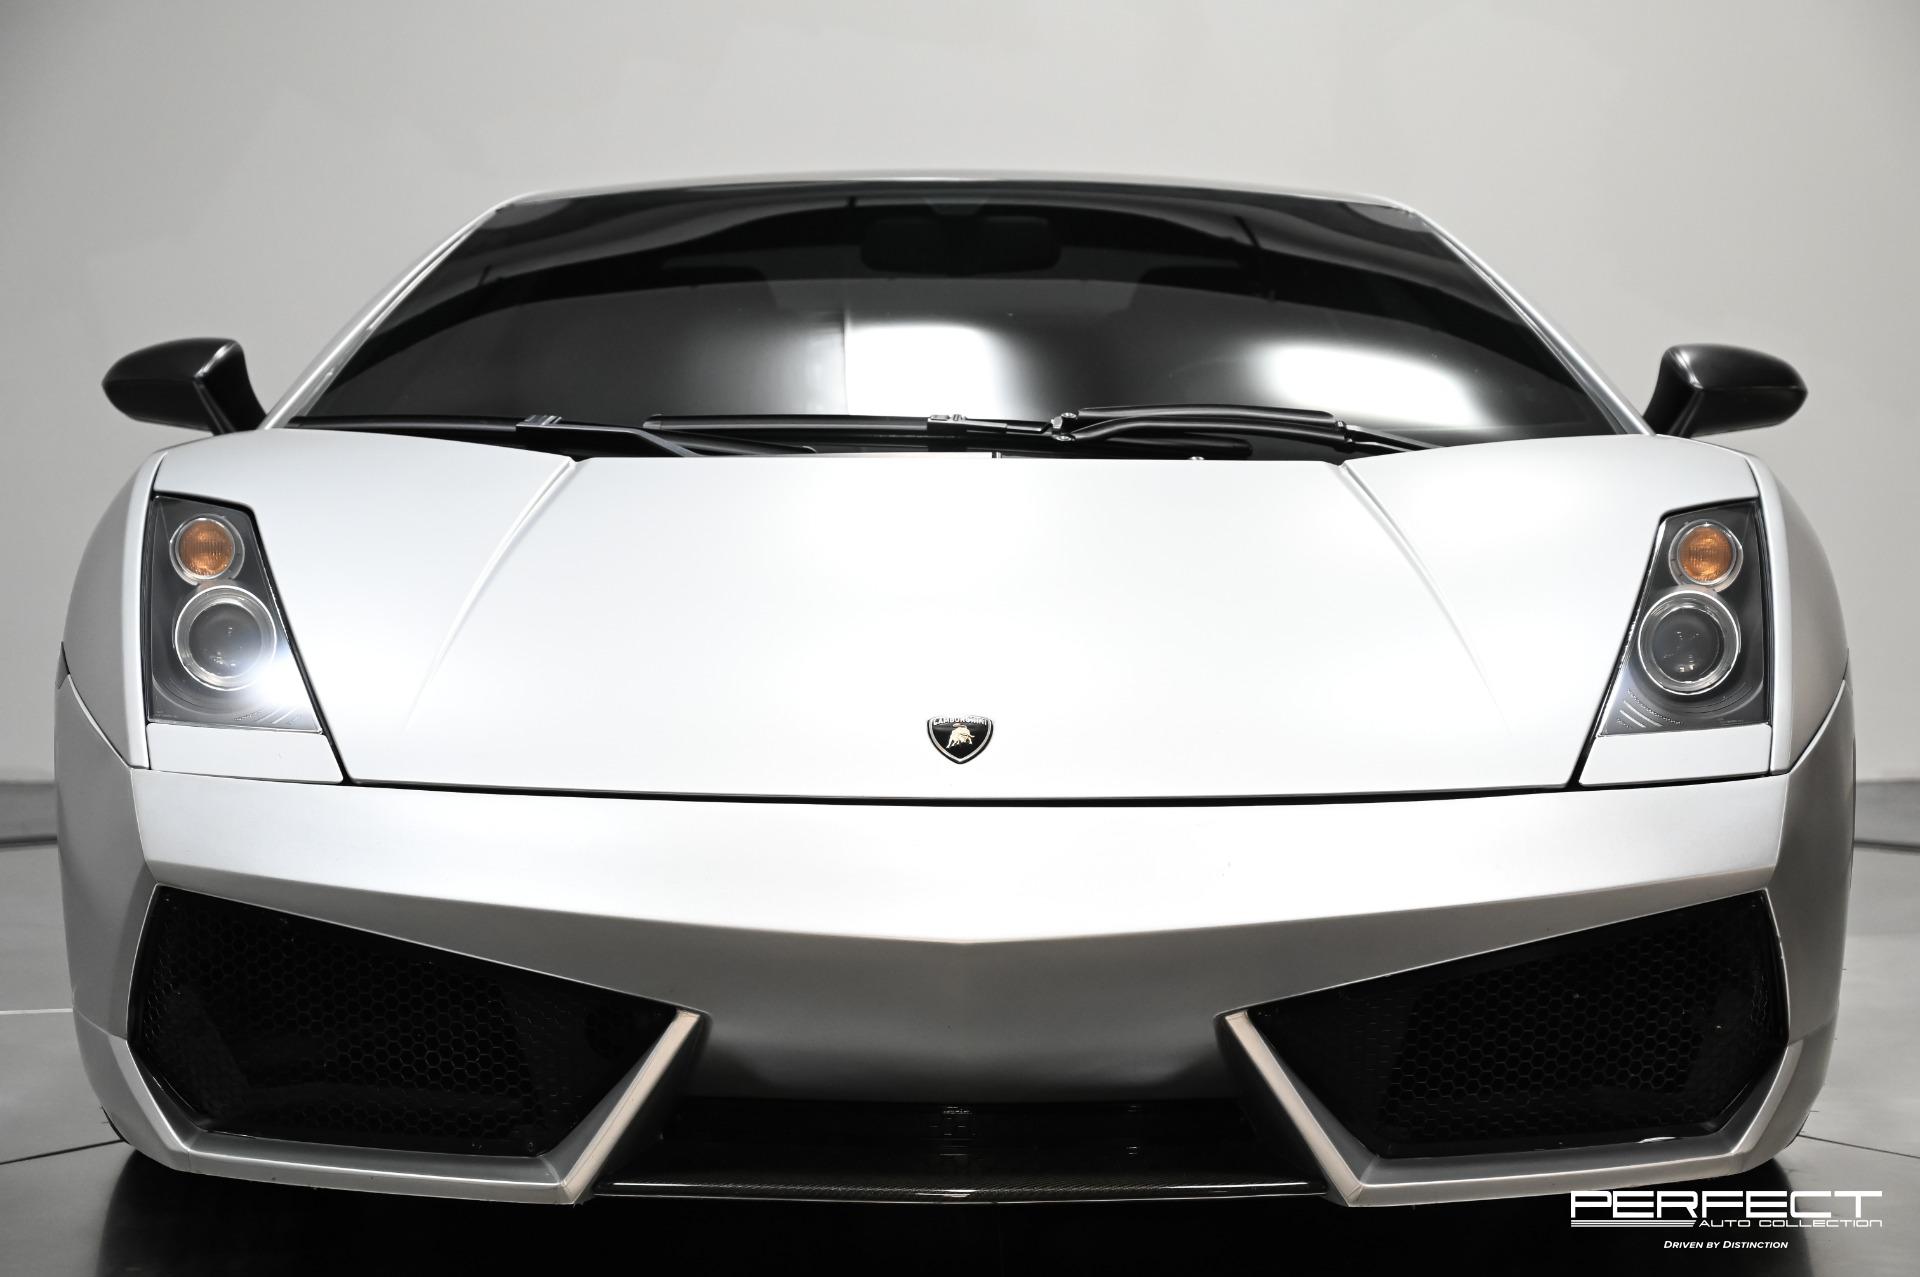 Used 2004 Lamborghini Gallardo Base For Sale (Sold) | Perfect Auto 